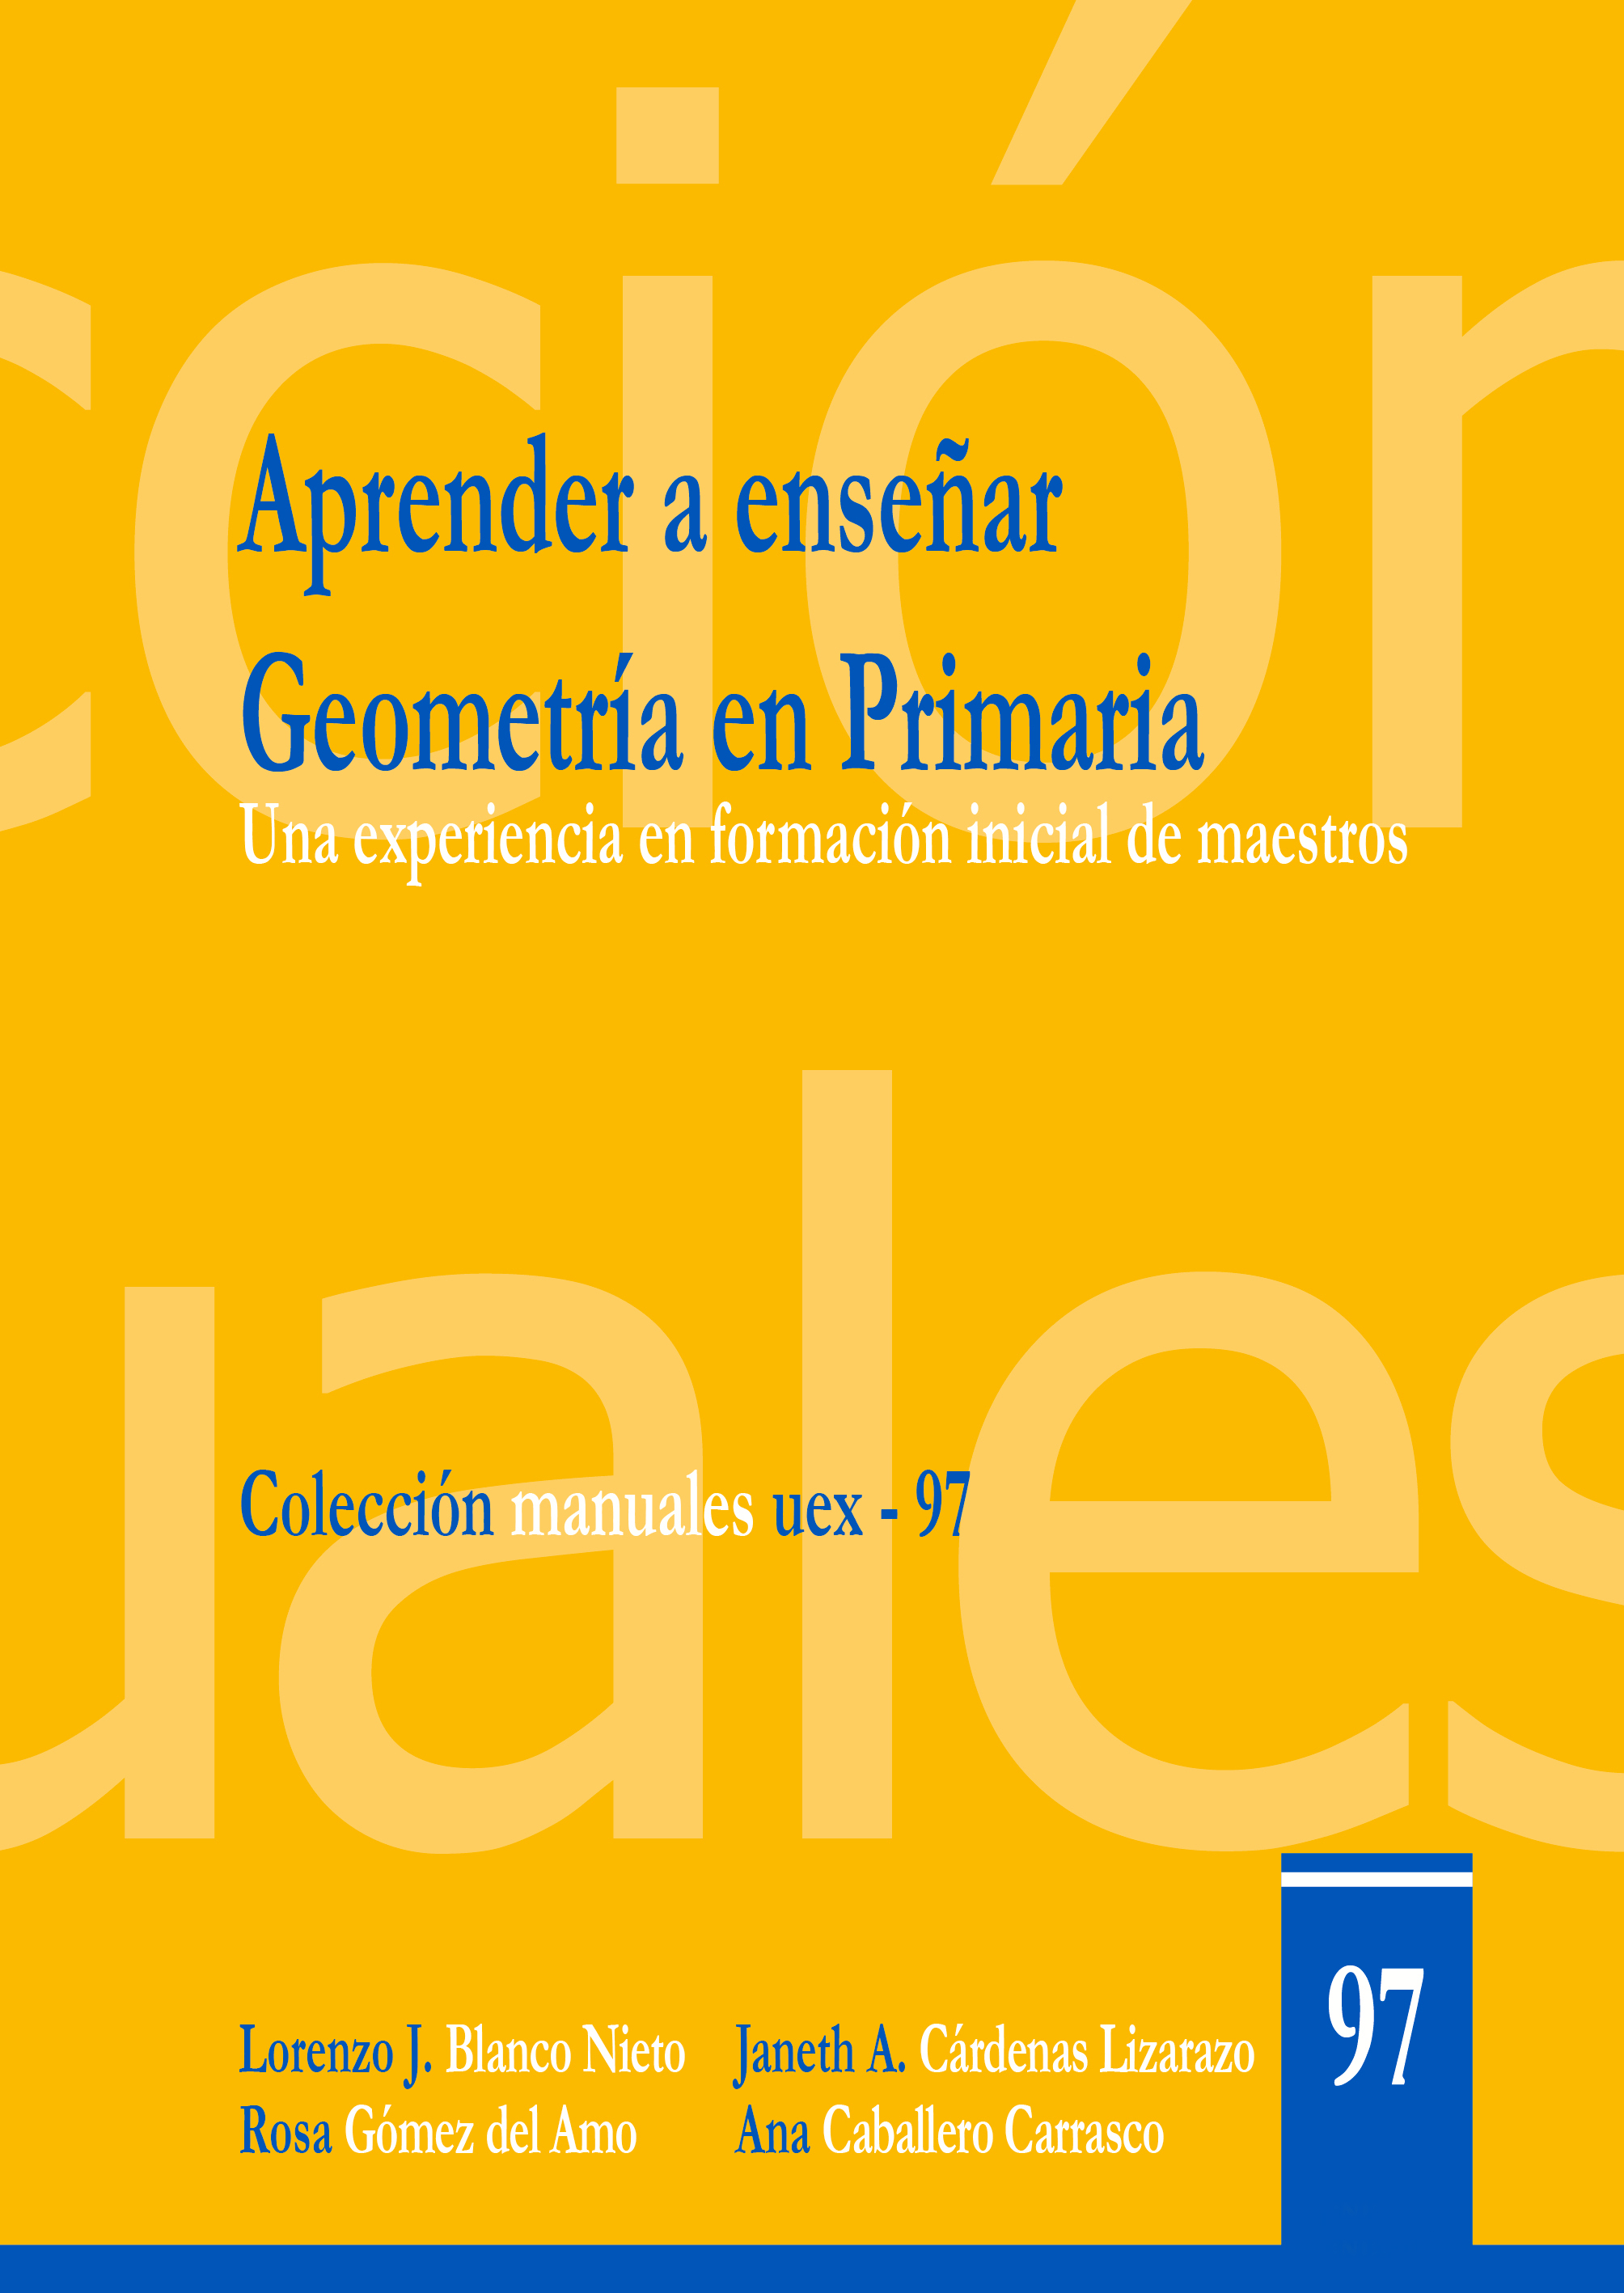 Imagen de portada del libro Aprender a enseñar geometría en Primaria. Una experiencia en formacion inicial de maestros